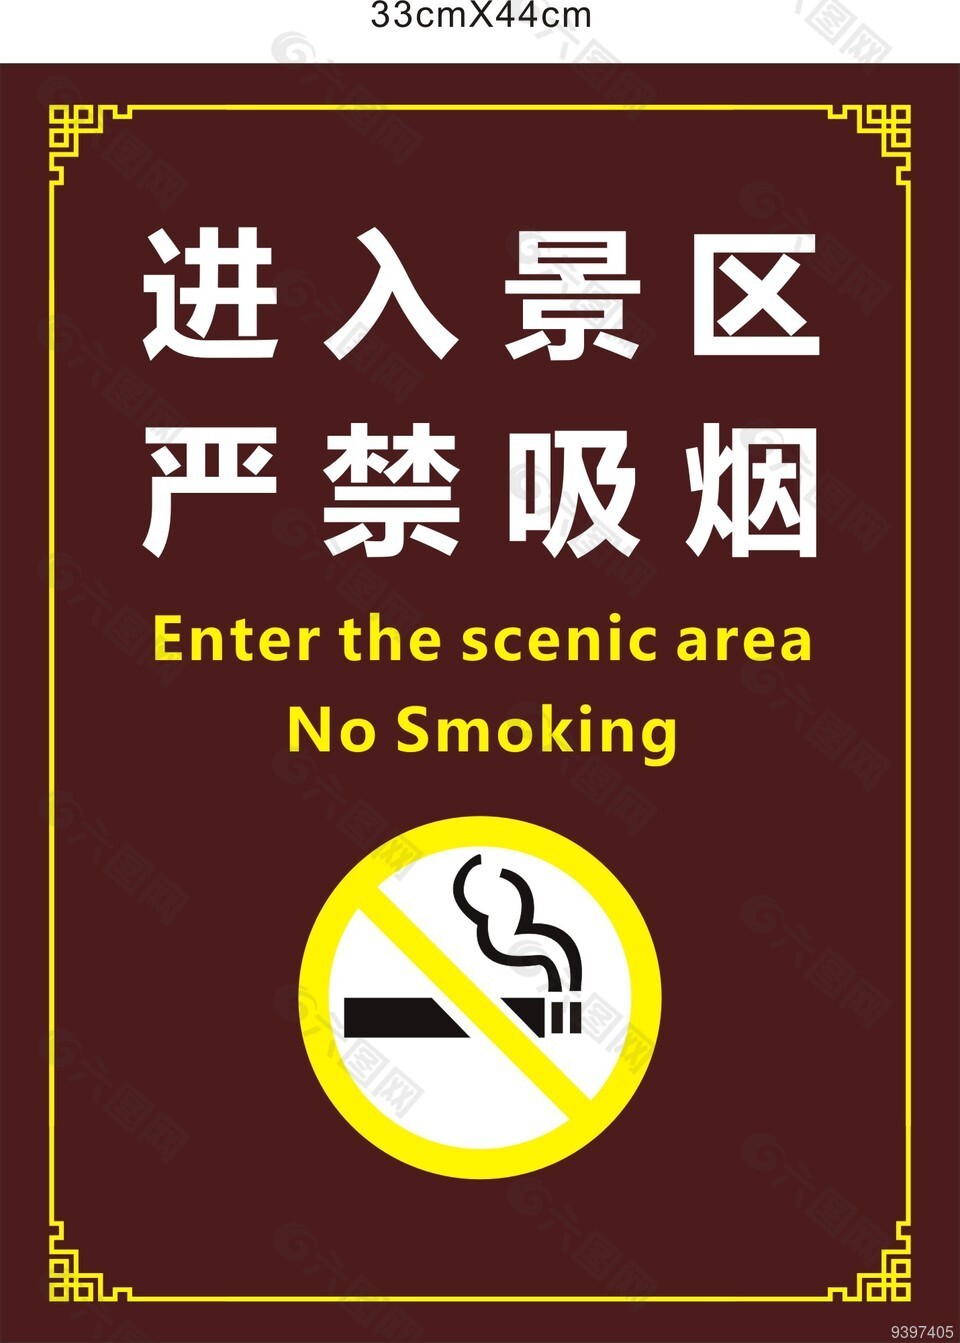 景区禁烟标志图片下载